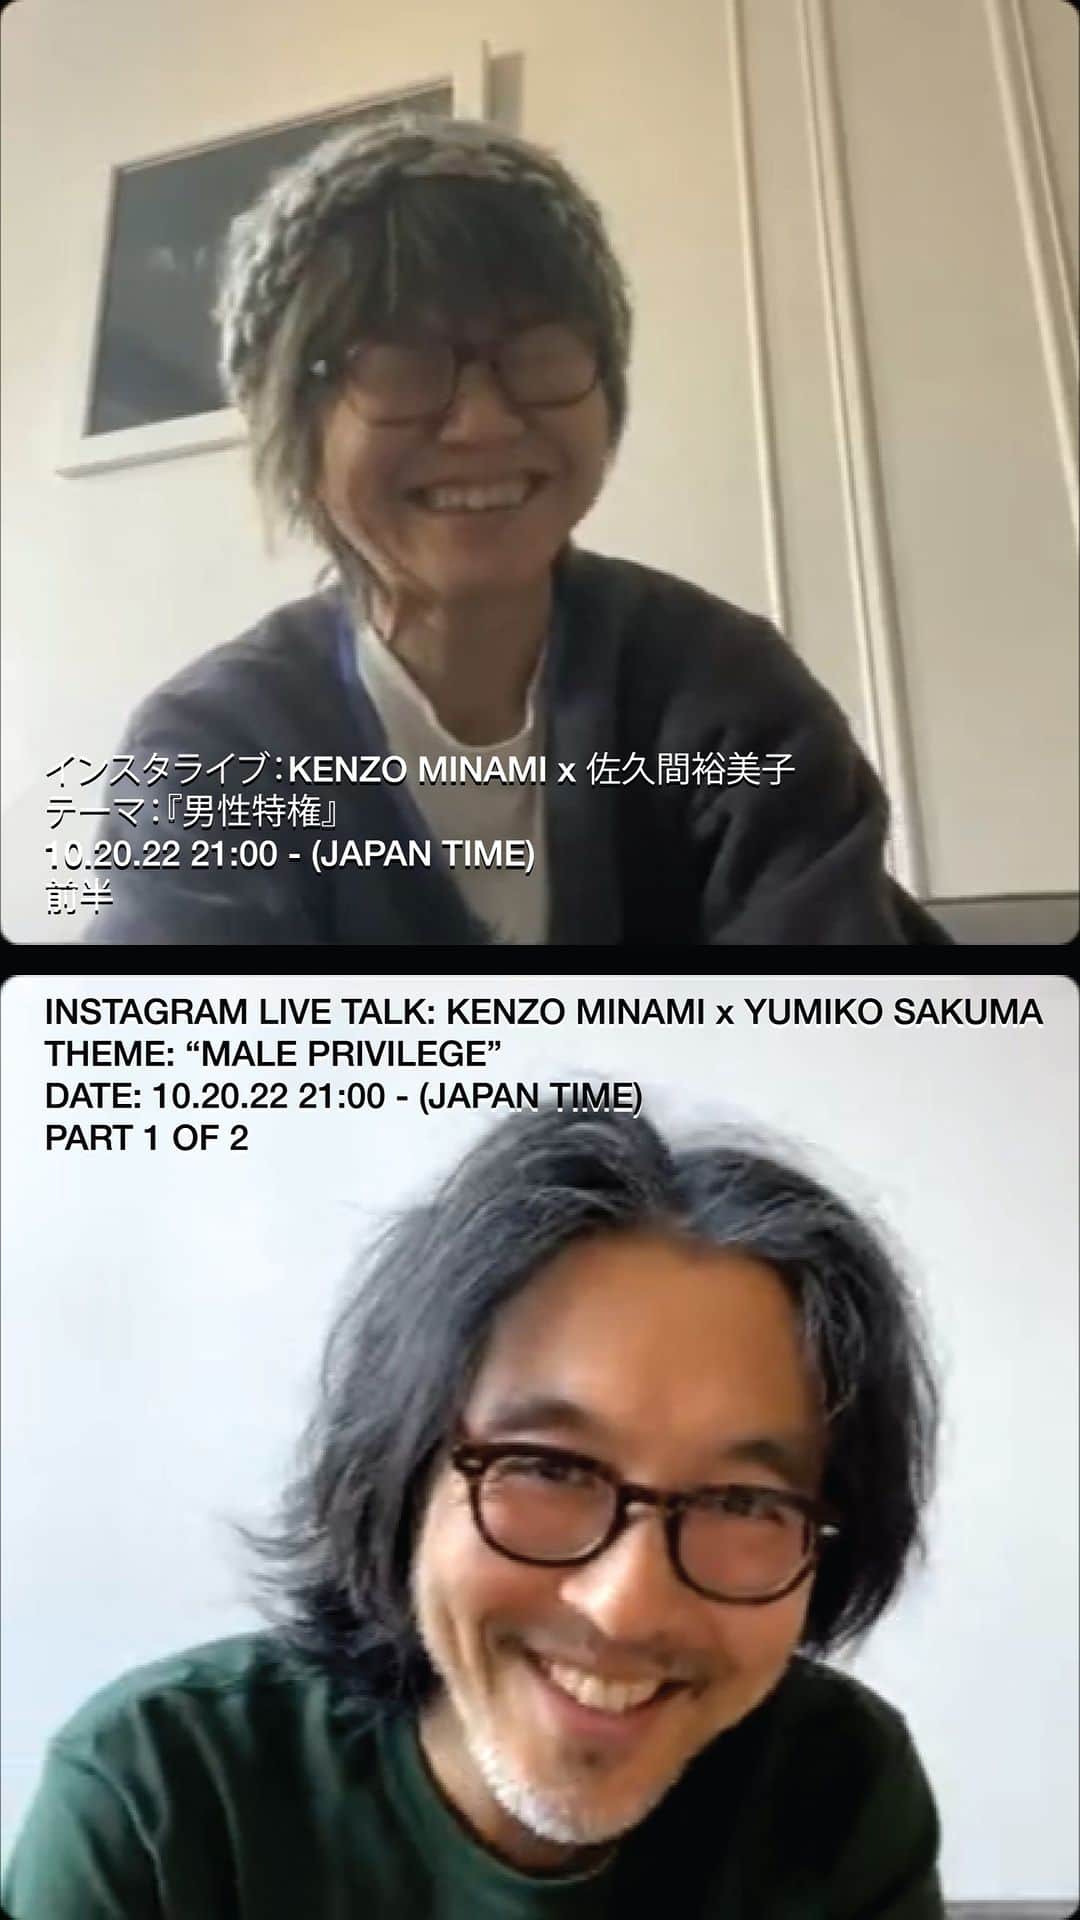 ケンゾーミナミのインスタグラム：「書籍『We Act! #3』@sakumagcoop 特別企画インスタライブ　vol.2  KENZO MINAMI x 佐久間裕美子 テーマ:『男性特権』 10/20/22 21:00 - (日本時間) 前半  Instagram Live Talk: KENZO MINAMI x @yumikosakuma THEME: “MALE PRIVILEGE” Part 1 of 2  (インスタの動画の上限が60分なので2部に分かれていますが) 100分のフルバージョンはこちらか、もしくはバイオのリンクから。  FULL VERSION: vimeo.com/763211451  (後半 / Part2 of 2 - https://www.instagram.com/tv/CkFOGvyP4PZ/?igshid=YmMyMTA2M2Y=)  #sakumag #男性特権 #maleprivilege #yumikosakuma #佐久間裕美子 #kenzominami」